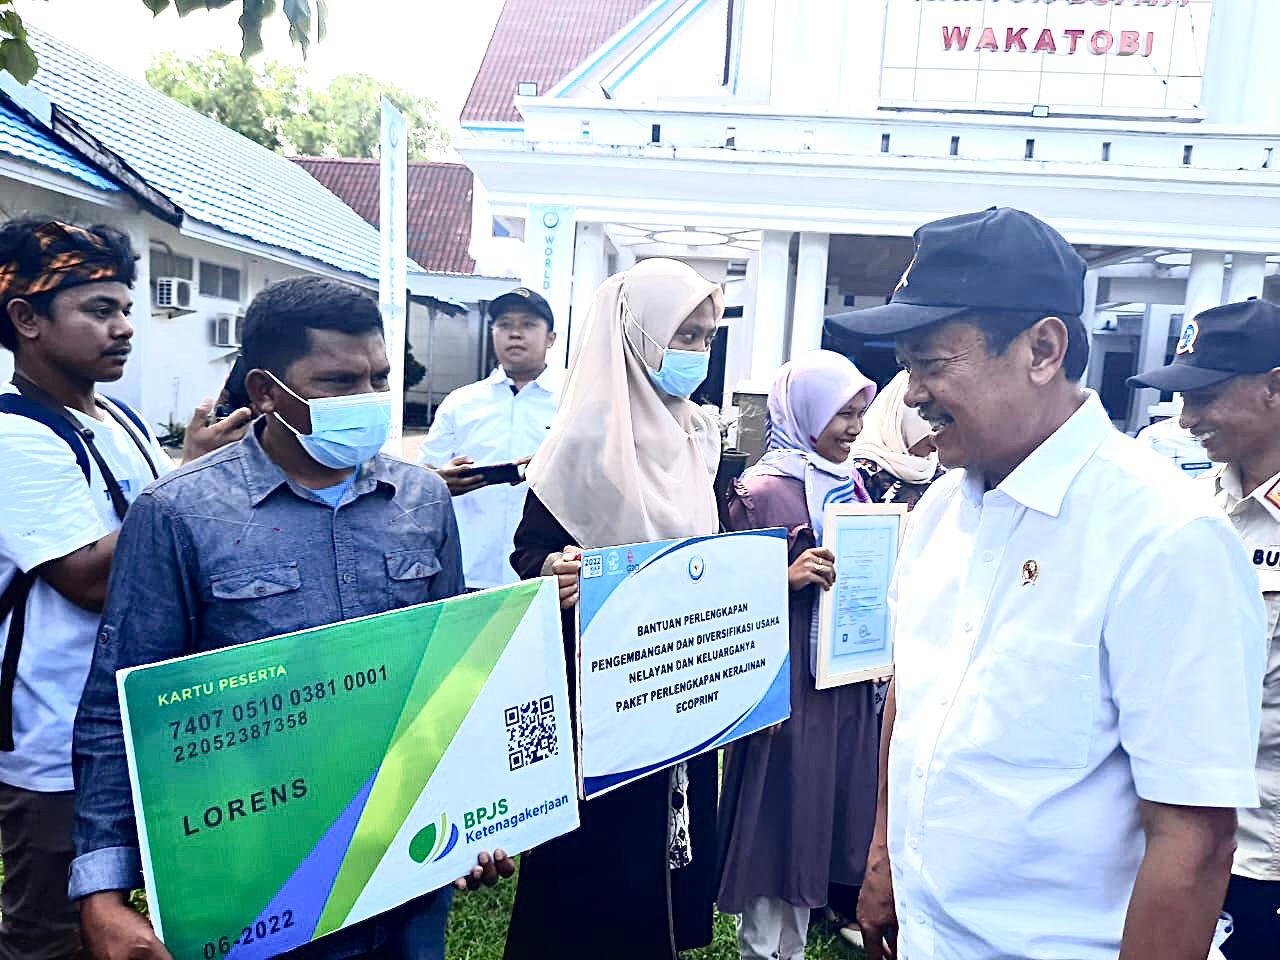 Menteri KKP, Sakti Wahyu Trenggono menyerahkan kartu kepesertaan BP Jamsostek kepada nelayan di halaman kantor Bupati Wakatobi. (Foto: Ist)